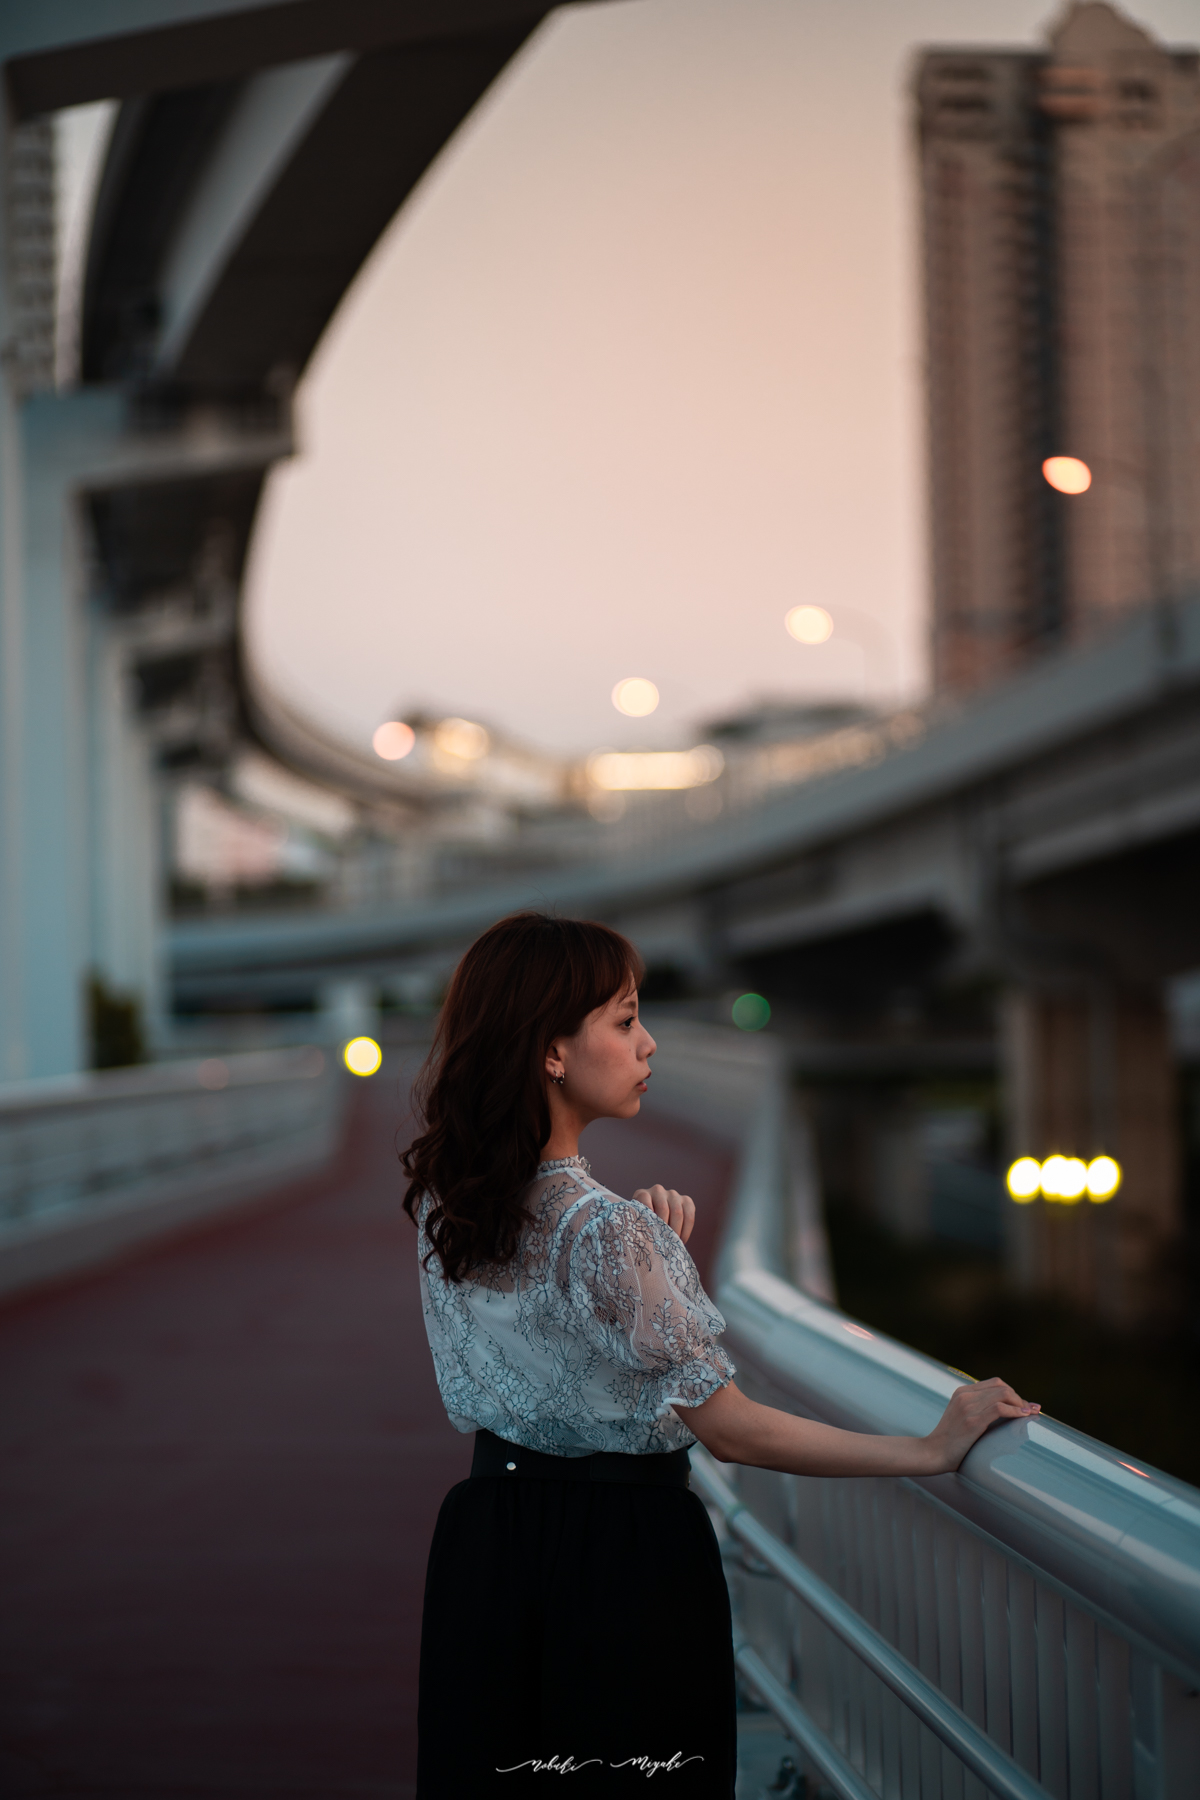 女性のポートレート写真。横川の写真。